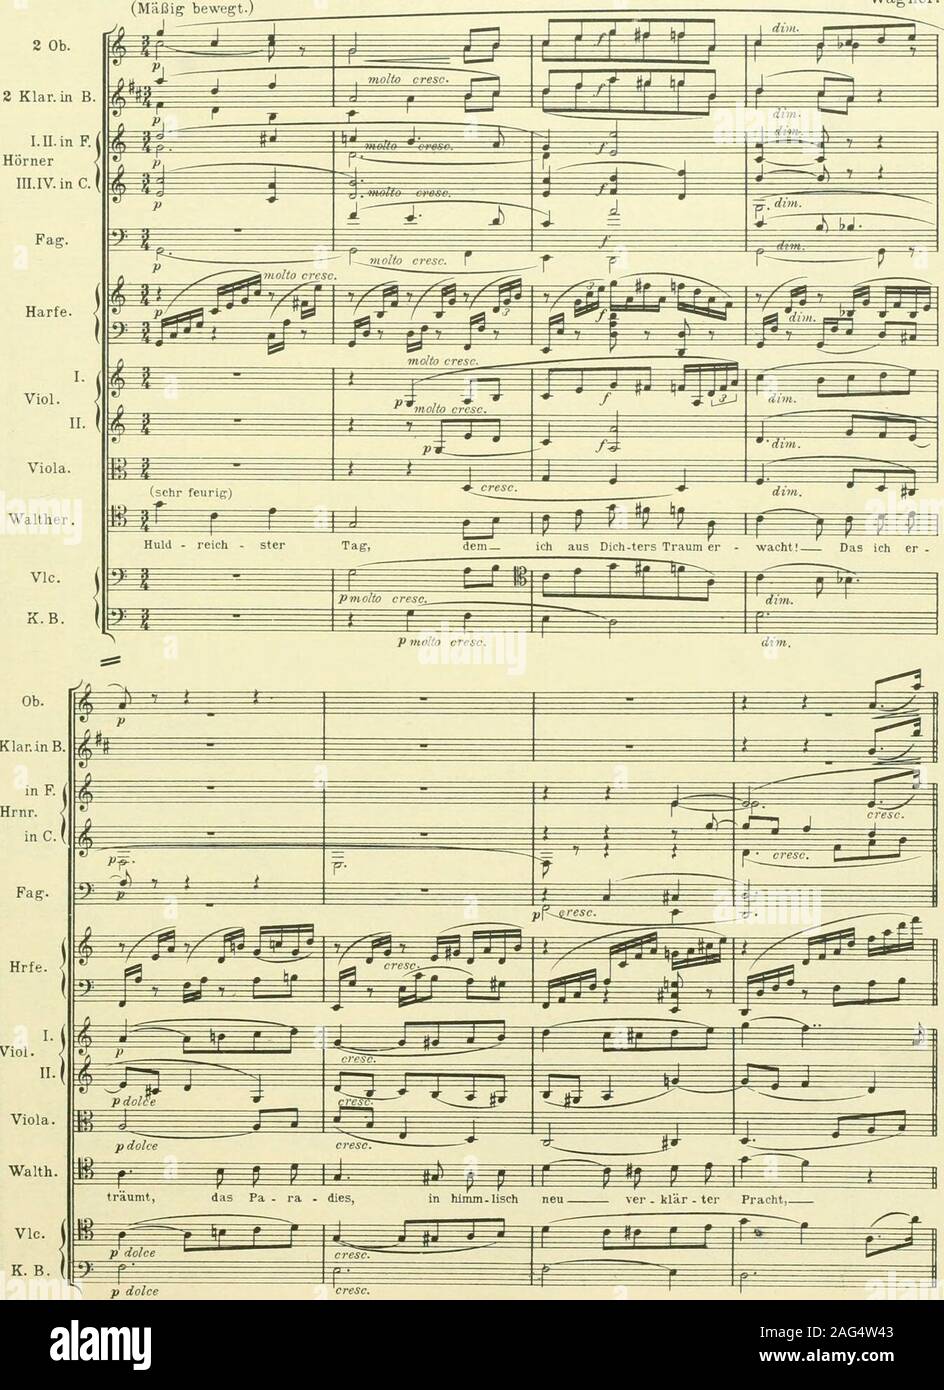 . Instrumentationslehre, von Hector Berlioz. Ergänzt und rev. von Richard Strauss. Edition Peters Welcher Vielseitigkeit Instrumentfähig ist ein einziges, mögen folgende eklatante Beispiele ausRieh. Wagners Werken beweisen-. Die Violoncelli,dieunisono mit den Violinen, in den Meistersingern 91 den edlen Schwung des feurigen Preisliedes inso intensiver Weise erhöhen (35)sindAusdruck Partiturbeispiel tiefster Zerknirschung im im Aktes Vorspiel desdritten Tannhäuser. (Partiturbeispiel 36). N9 35. Meistersinger, Akt IE. Wagner.. N9 :m. TaimhaustM Akt 111. (KiiiUMtung-.) Andante assai lento. Wagne Foto de stock